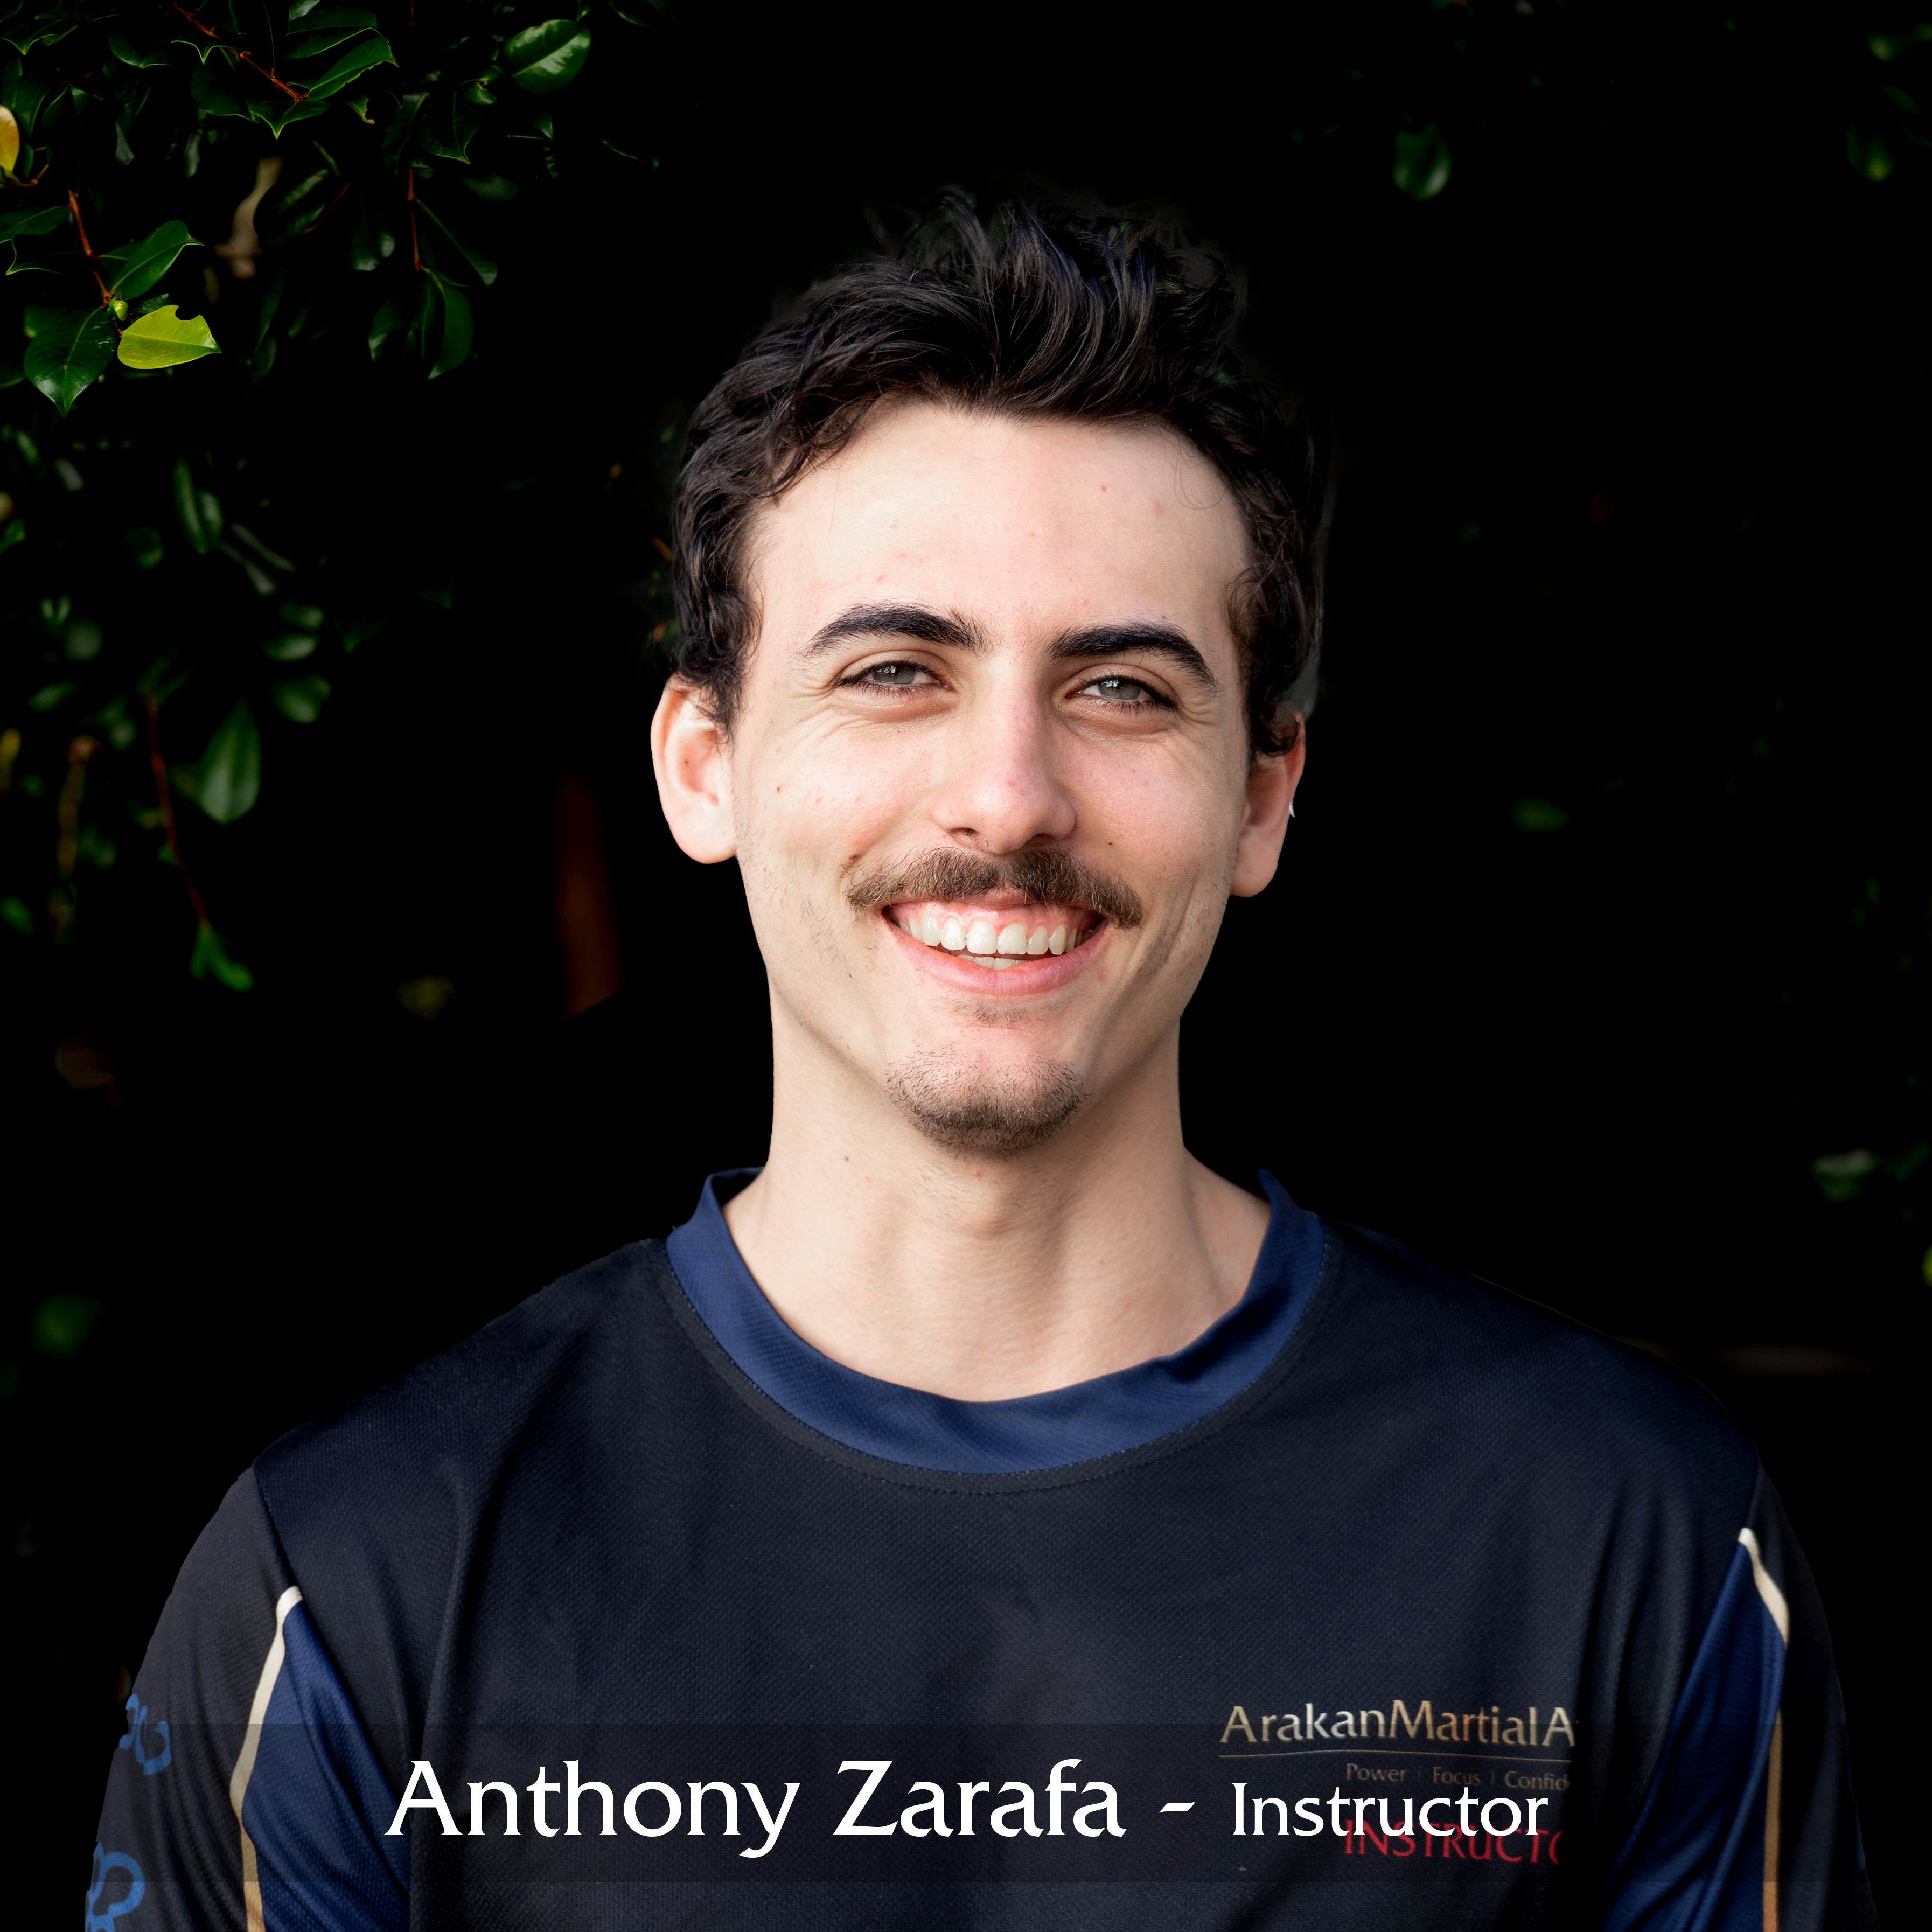 Anthony Zarafa